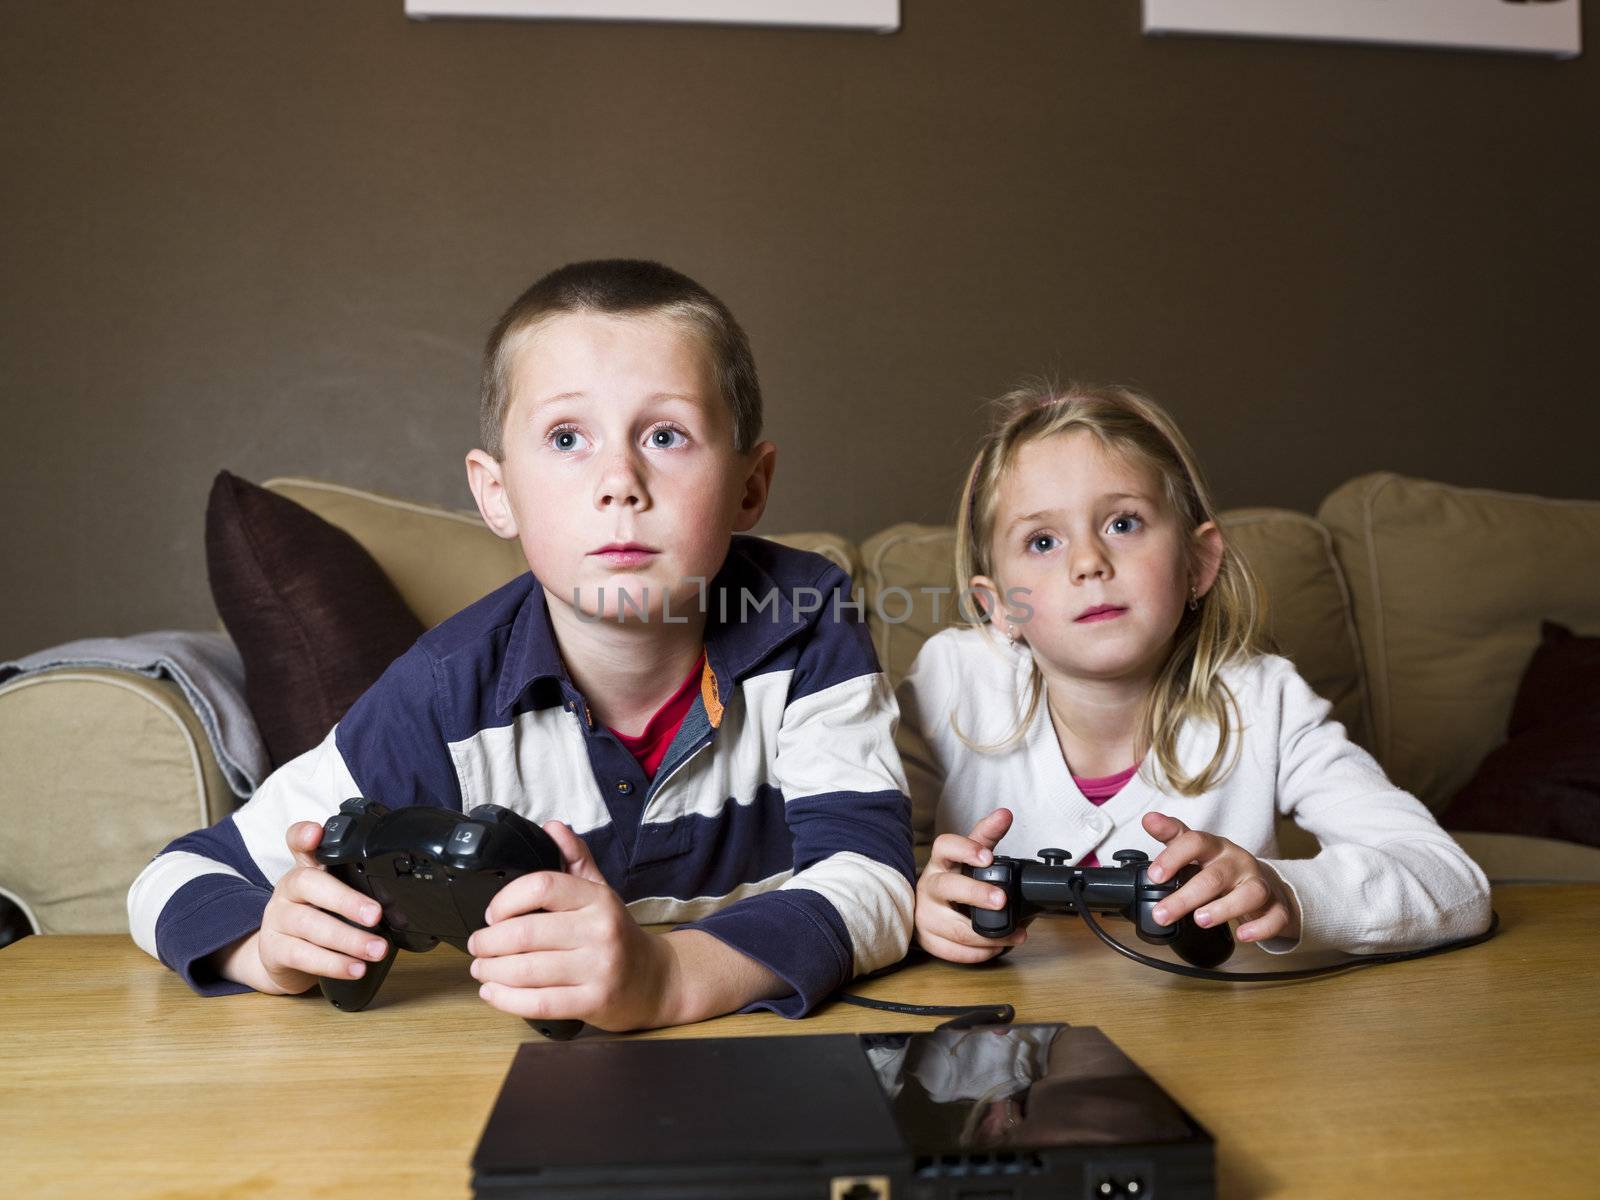 Siblings playing video games by gemenacom